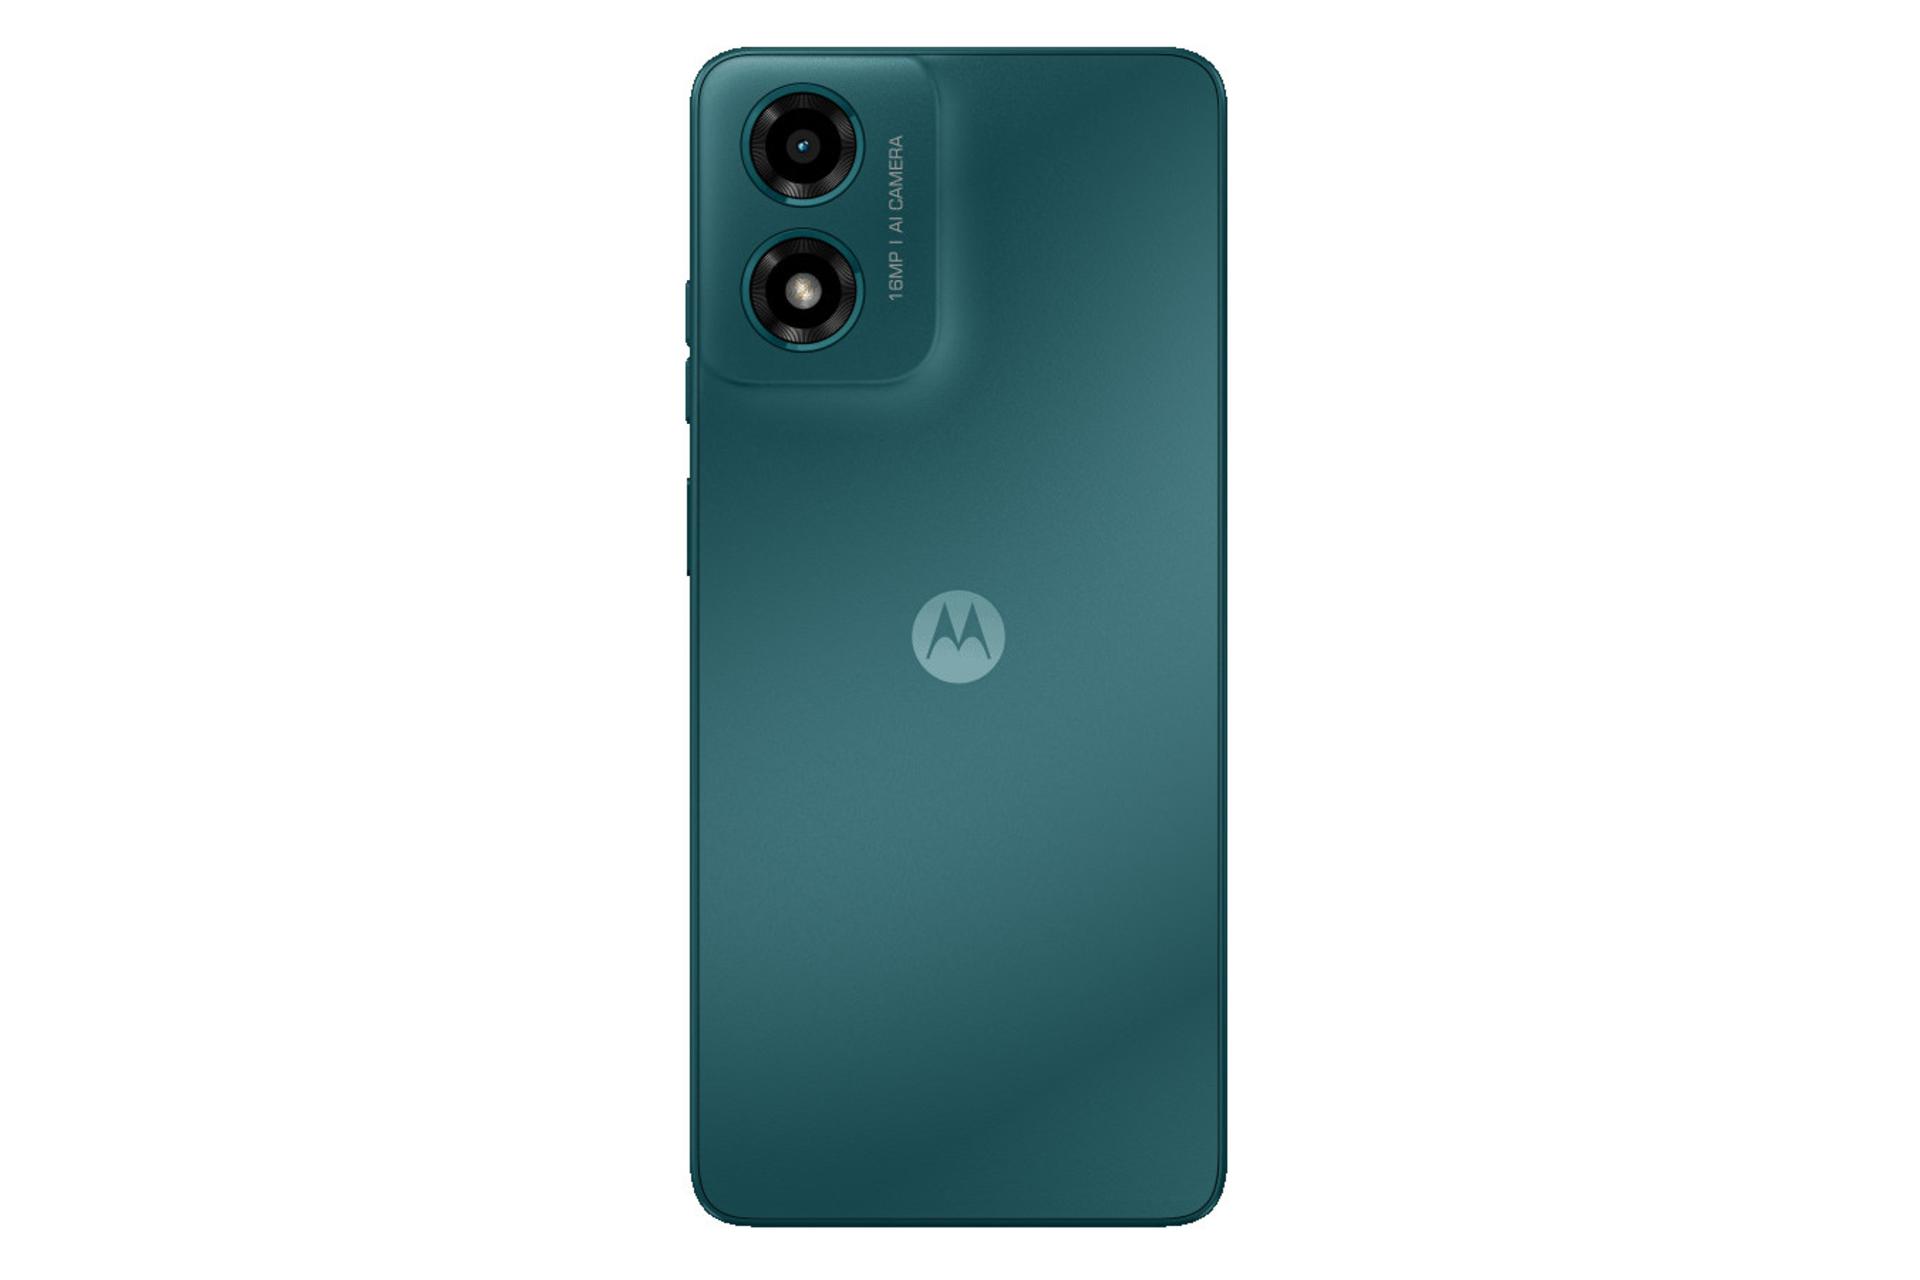 پنل پشت و چینش دوربین گوشی موبایل موتو G04s موتورولا سبز / Motorola Moto G04s